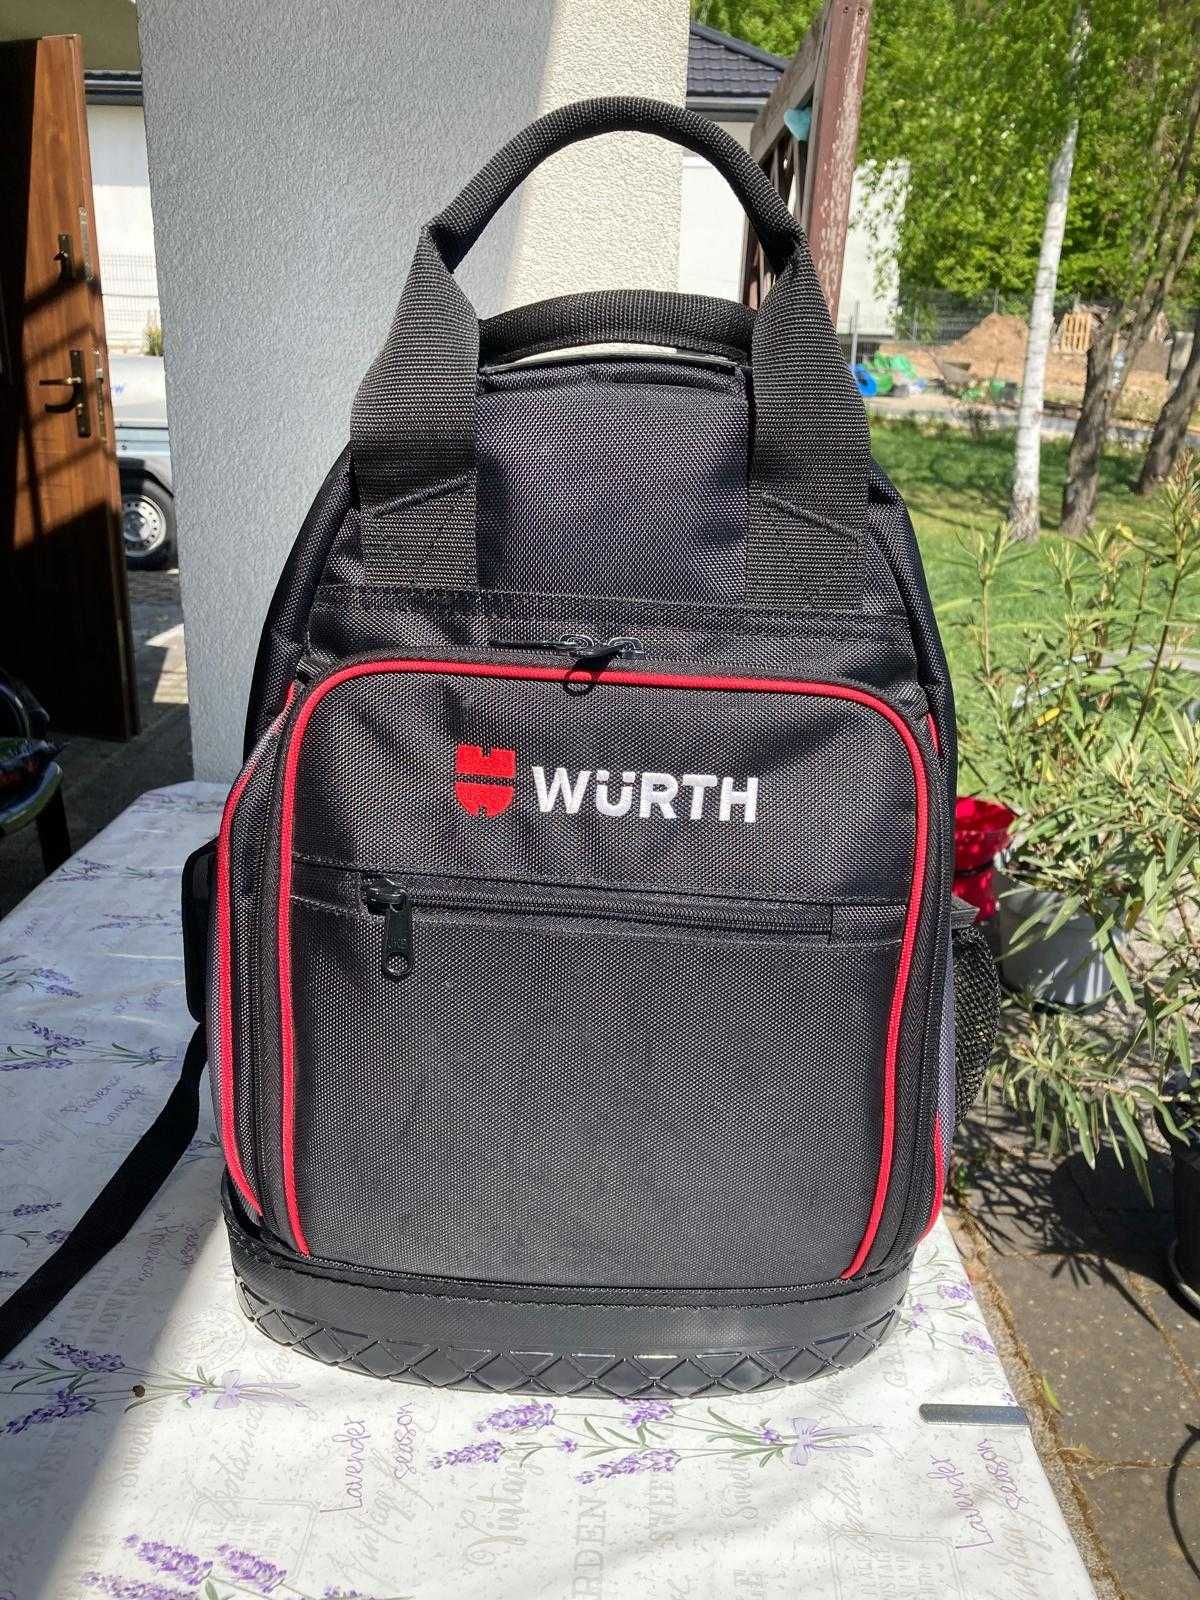 Wurth Zebra plecak z narzędziami   950 zł